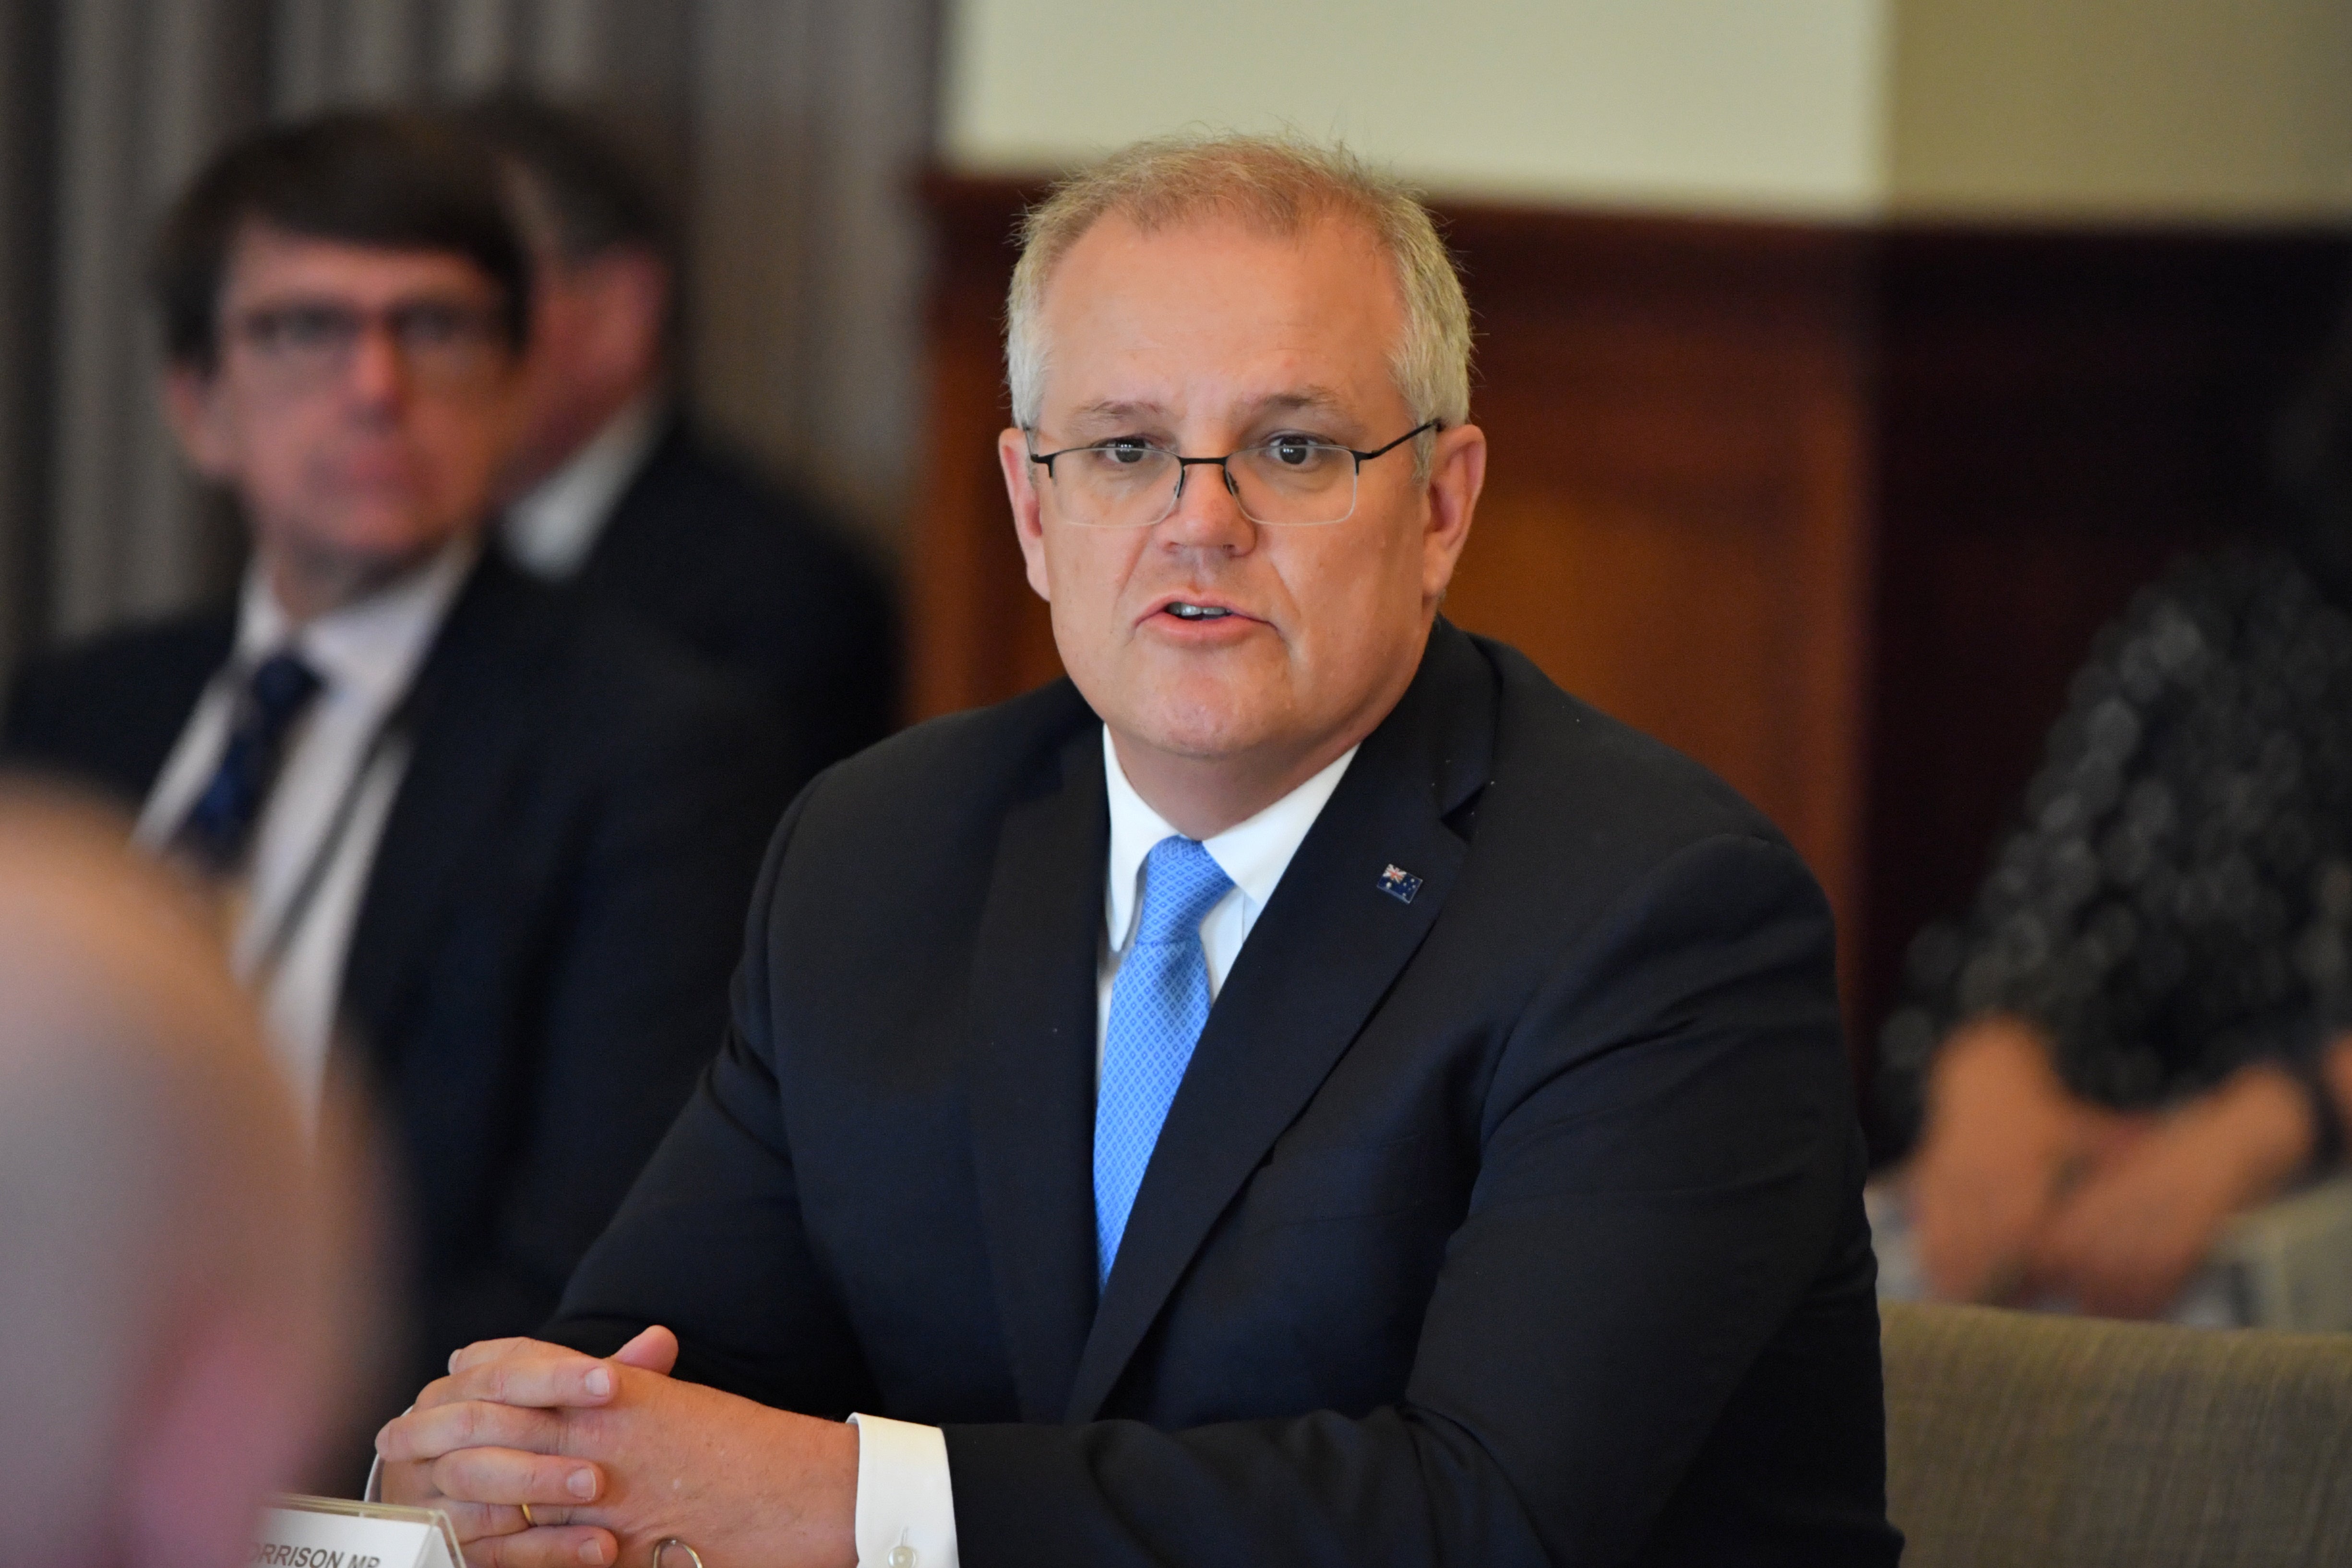 Australian Prime Minister Scott Morrison won’t be taking part in the talks